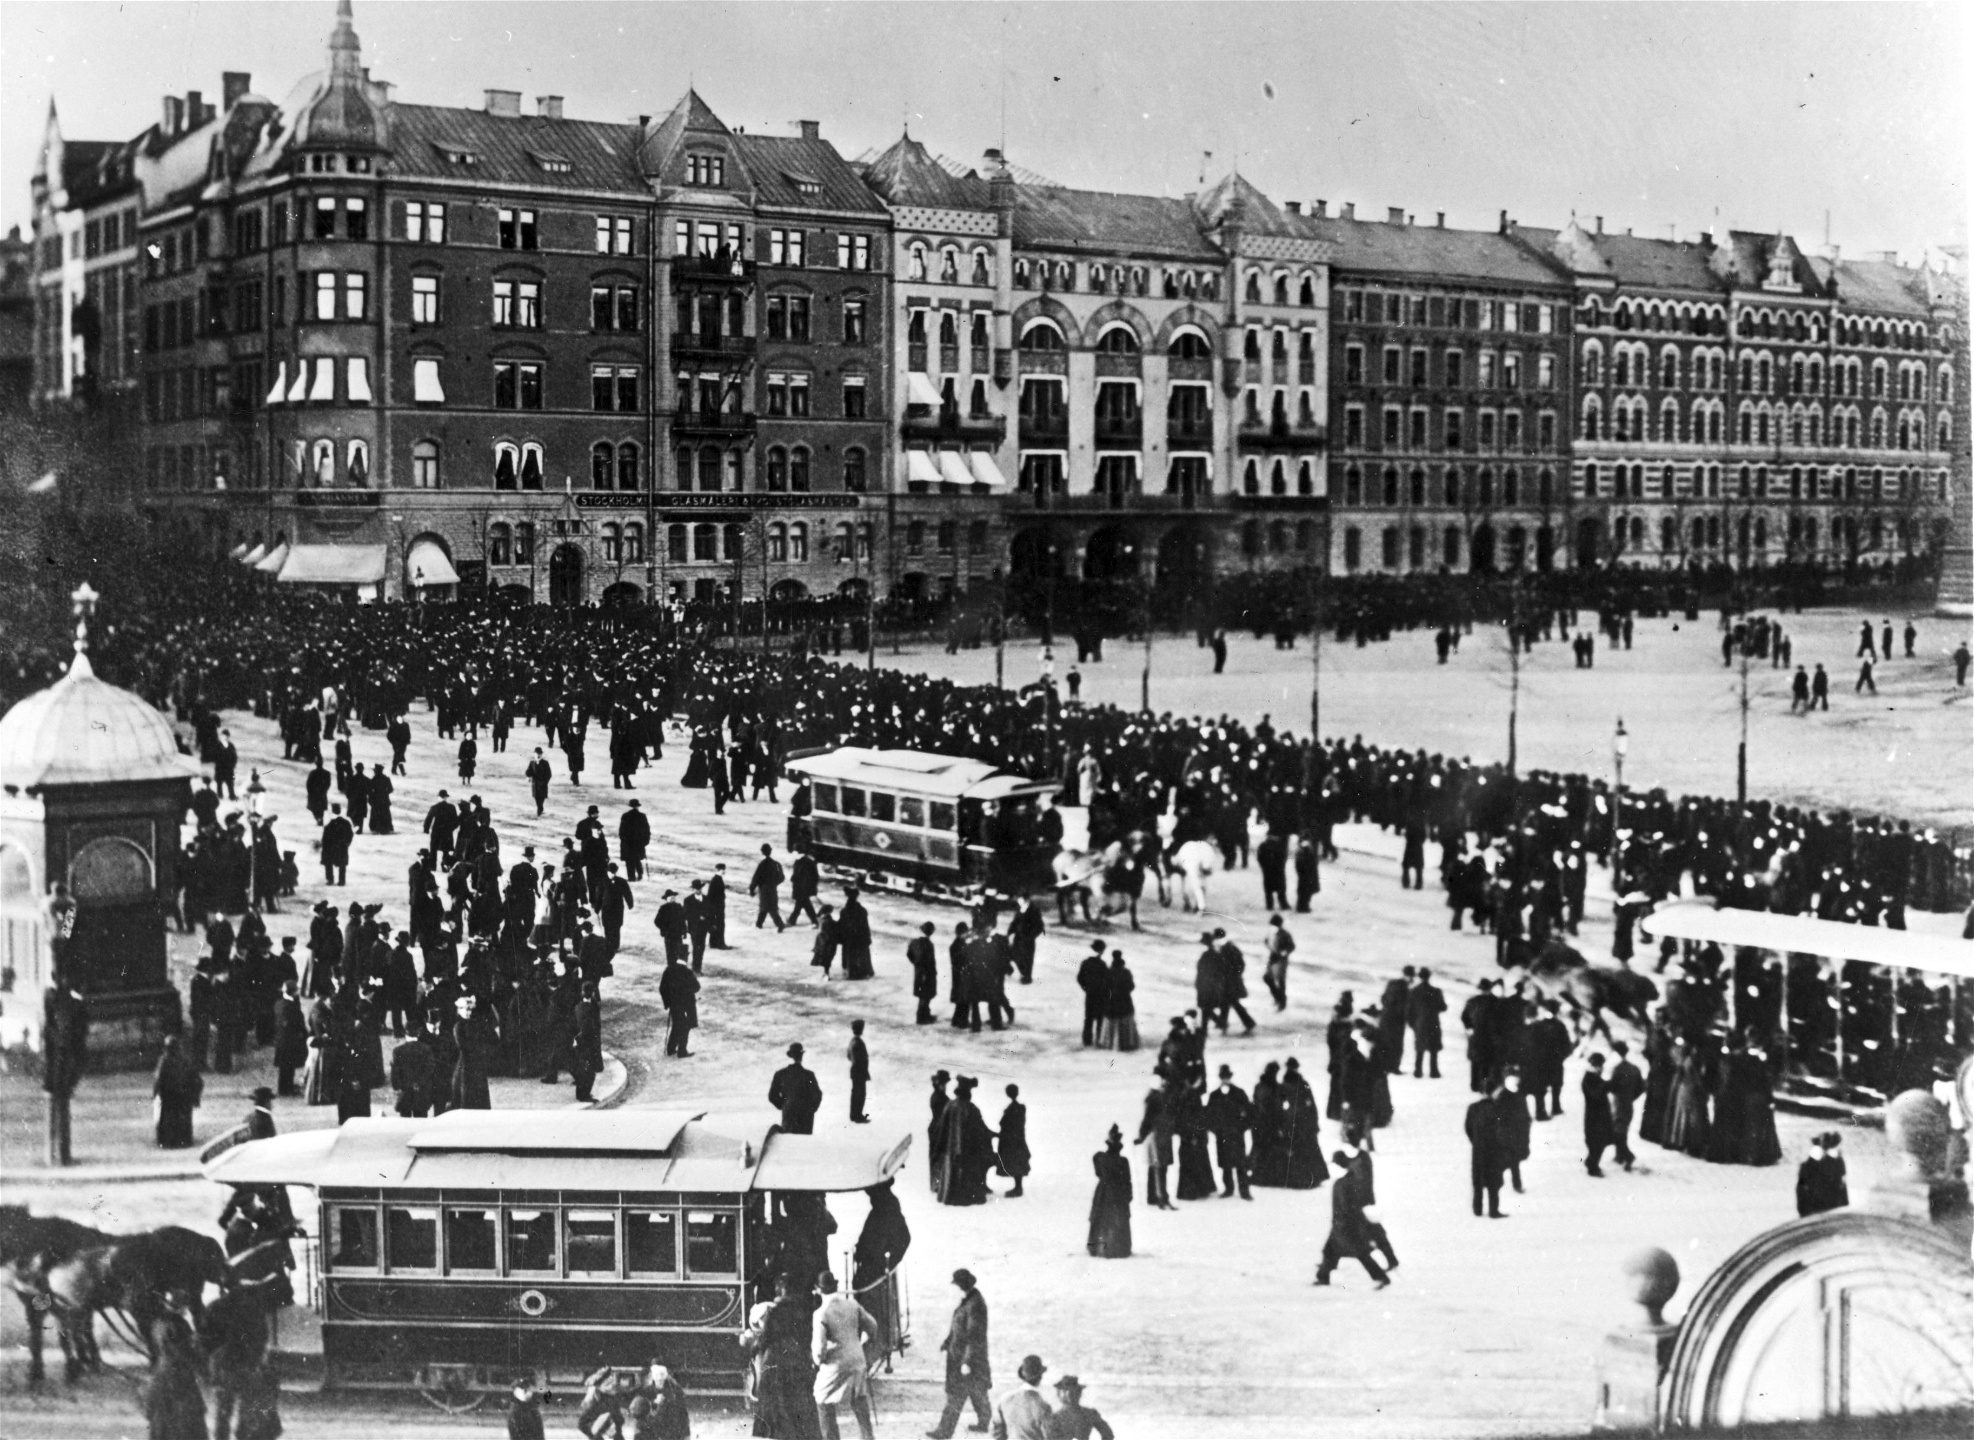 Rösträttsdemonstration på Norra Bantorget i Stockholm 1902. Demonstrationerna utmynnade i vissa fall i kravaller, en av de konfrontationssituationer som tas upp i Politik underifrån.